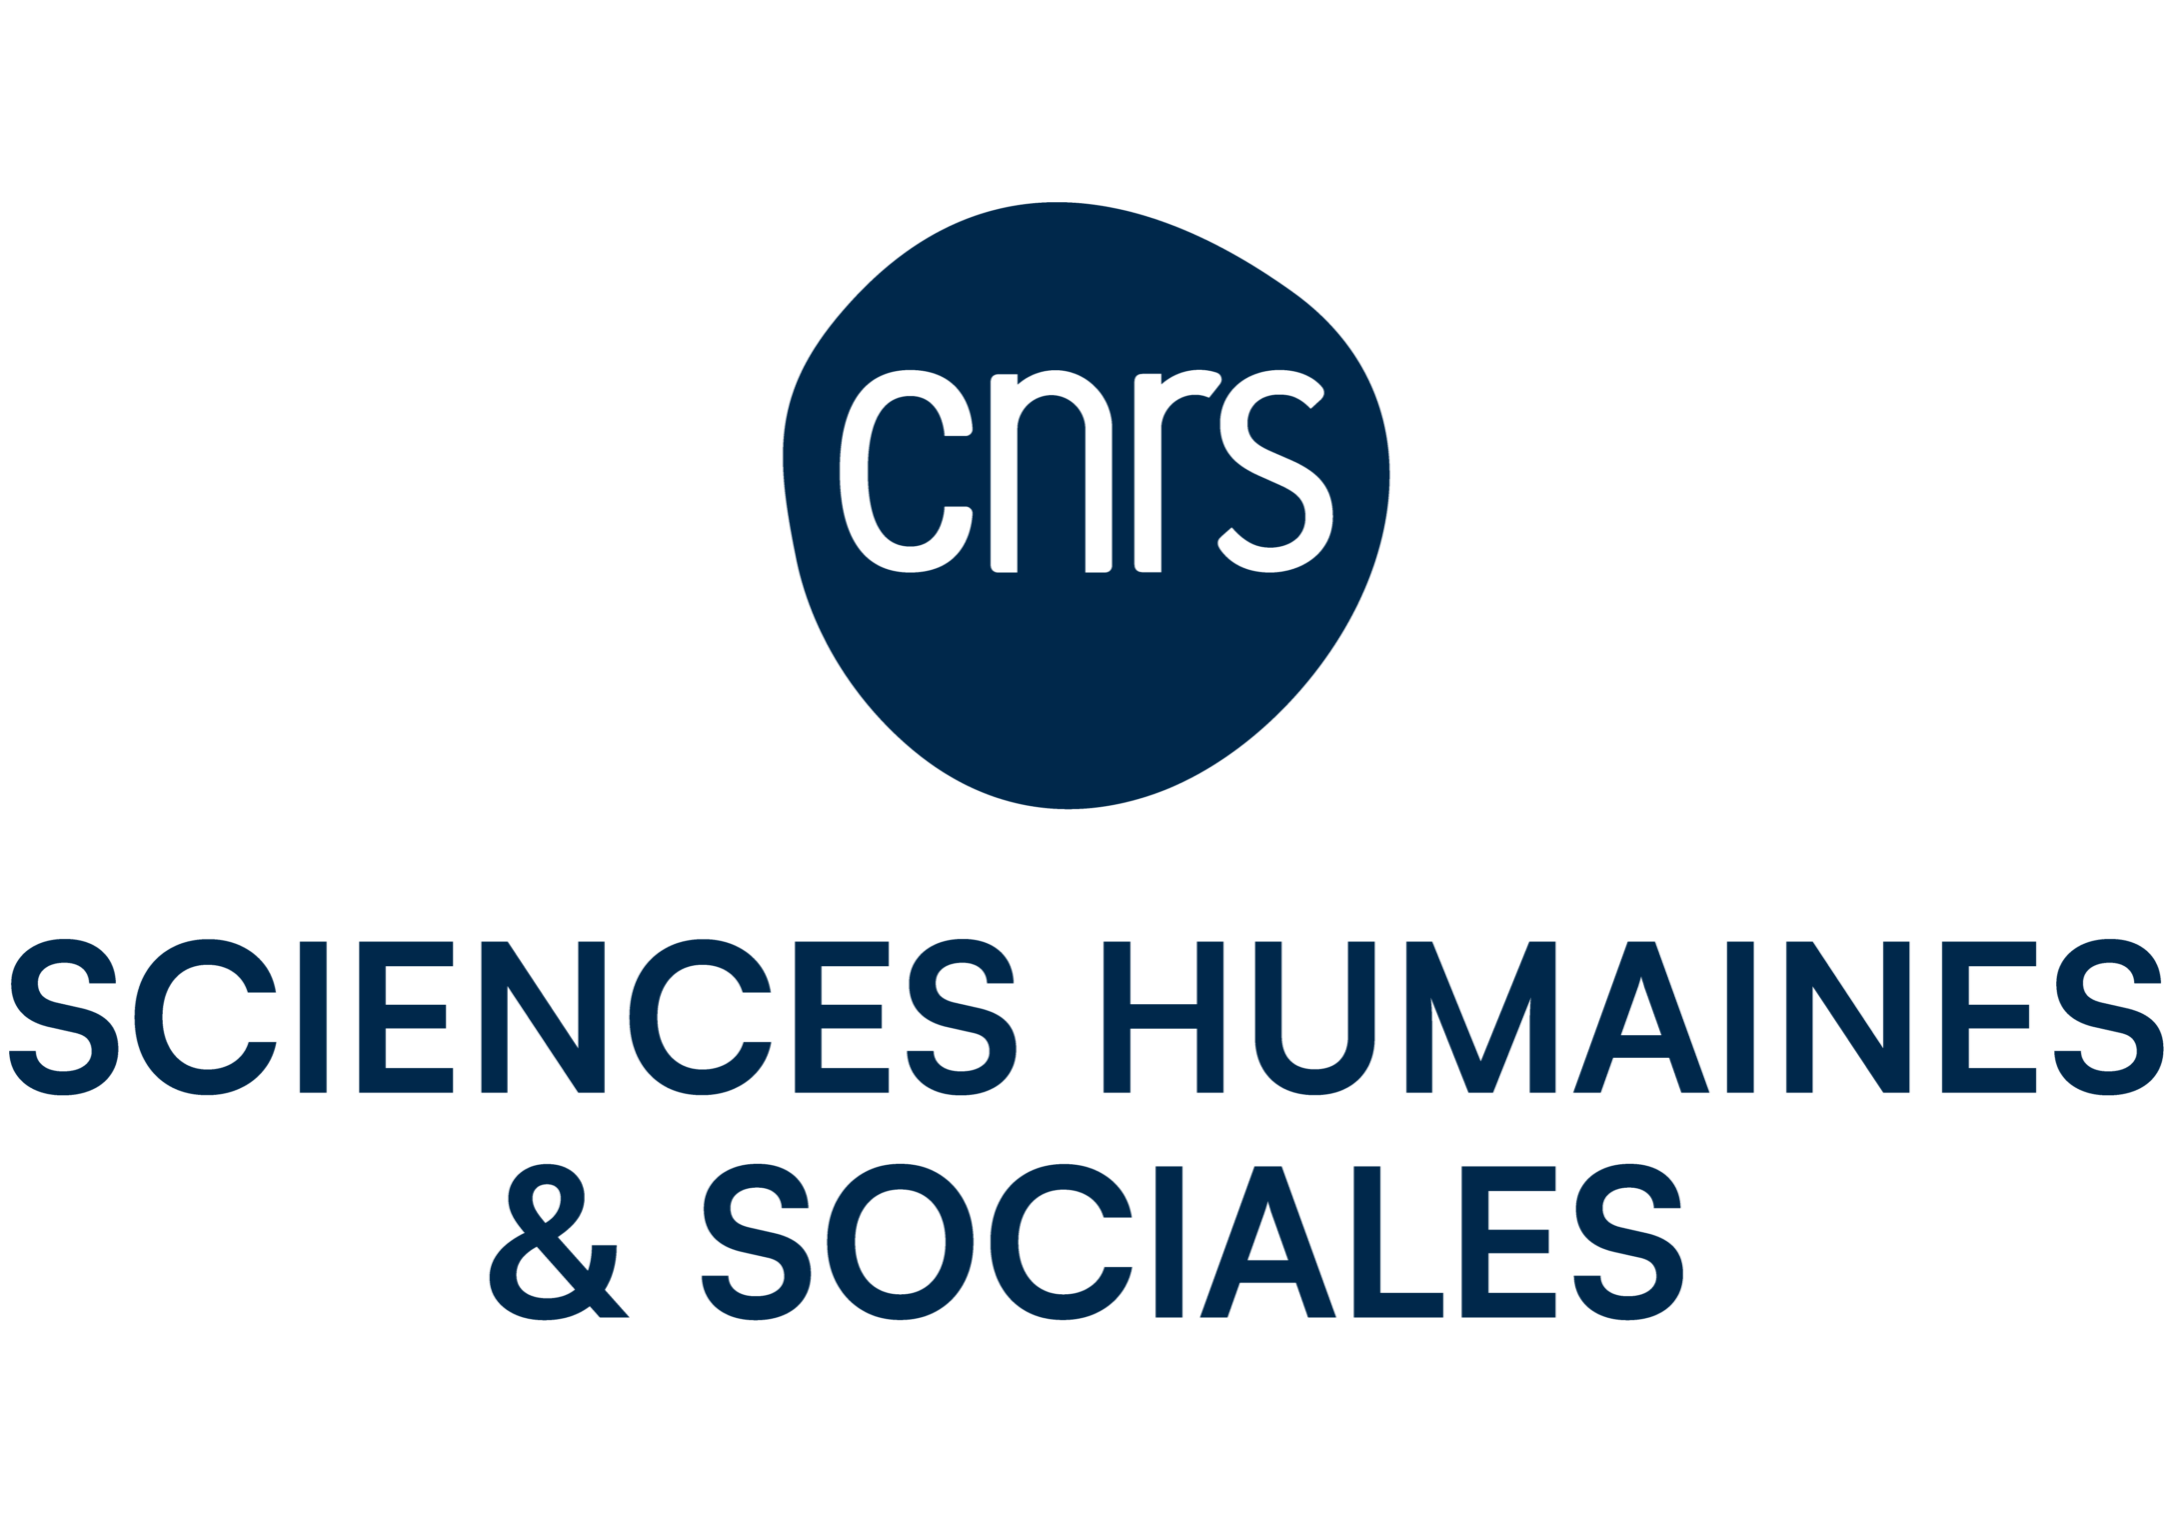 CNRS_SCIENCES_HUMA_DIGI_H_RVB